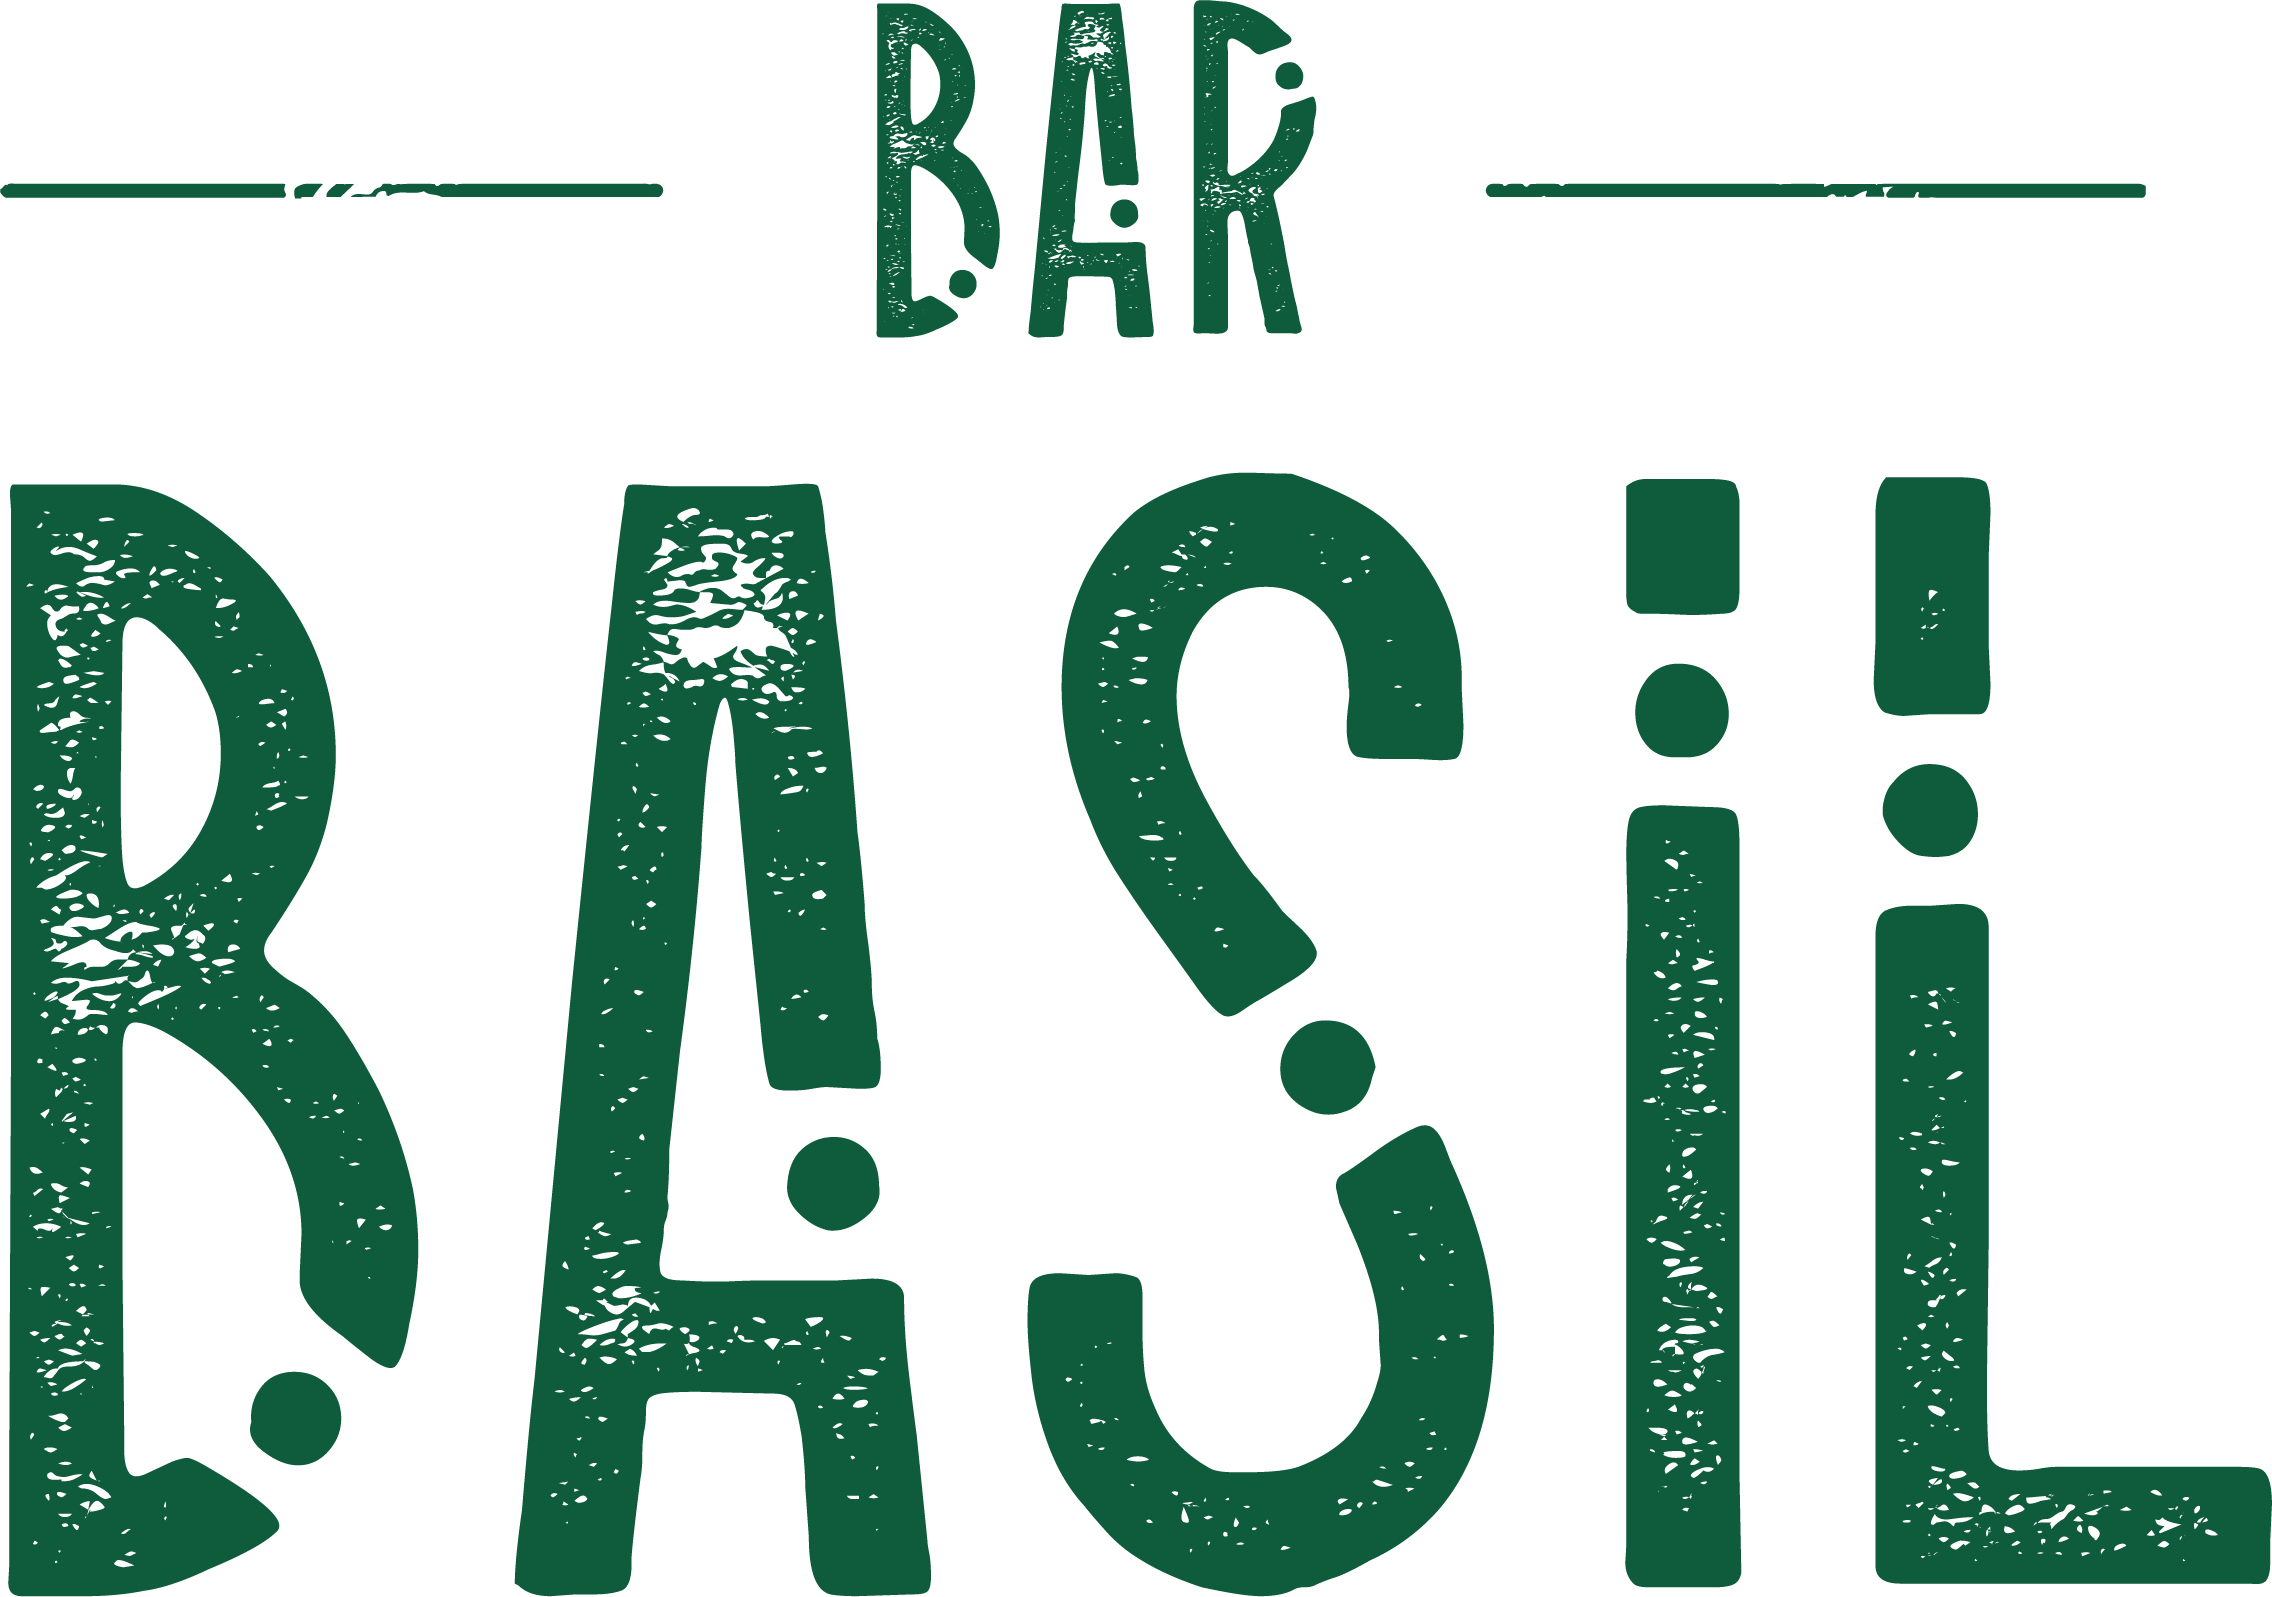 Bar Basil